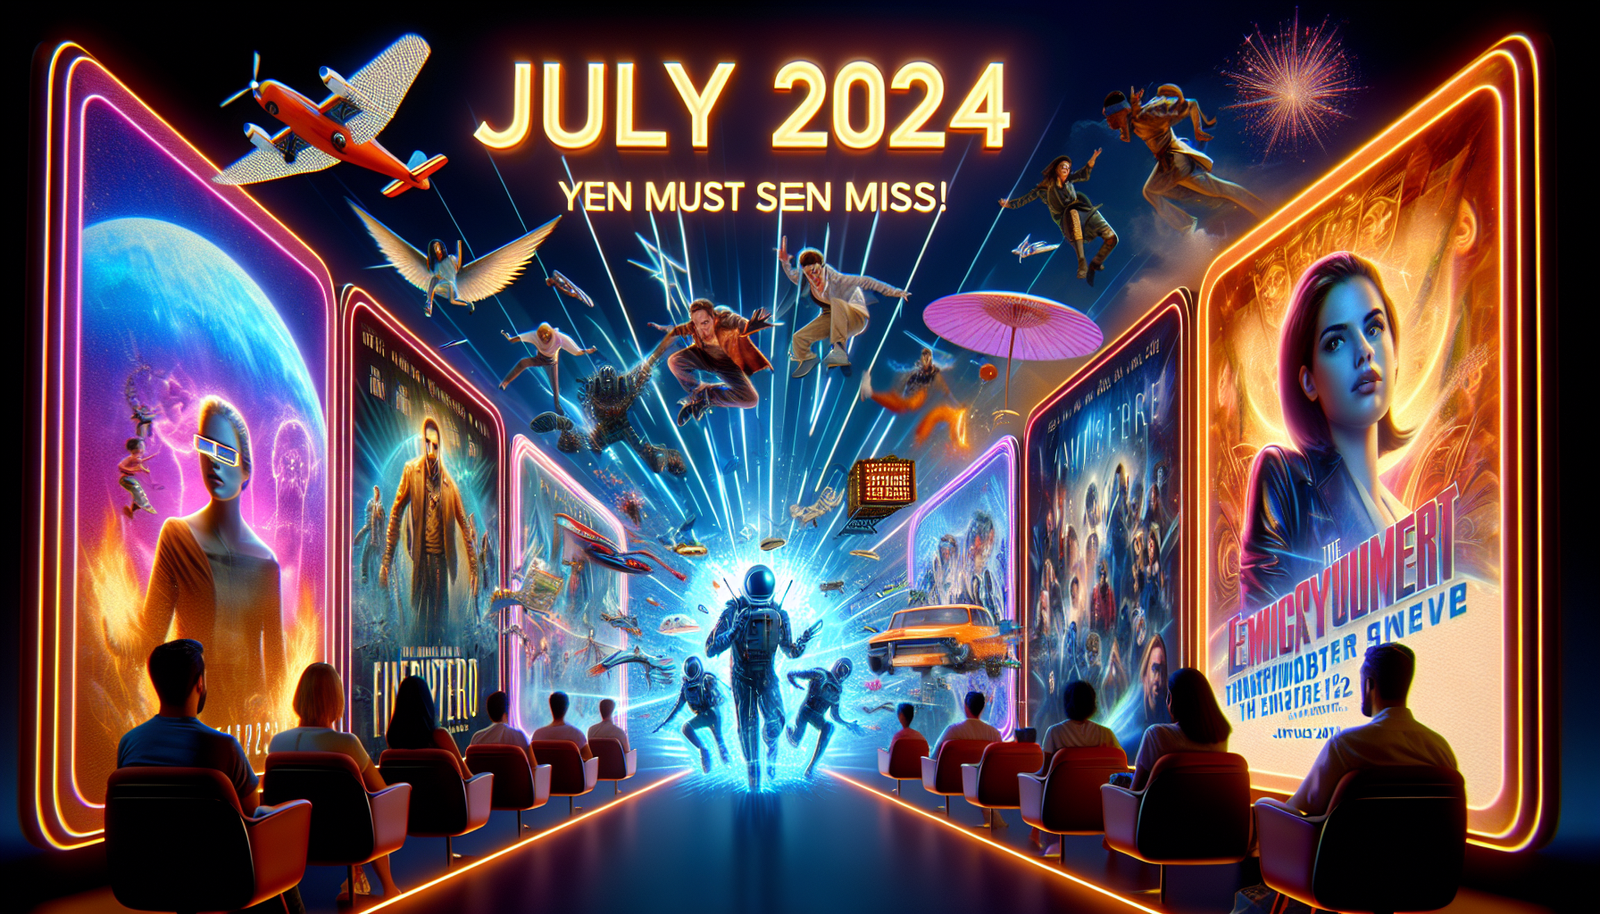 Descubra los increíbles programas y películas nuevos que llegarán a Netflix en julio de 2024 y que no puede perderse. ¡prepárate para sorprenderte!